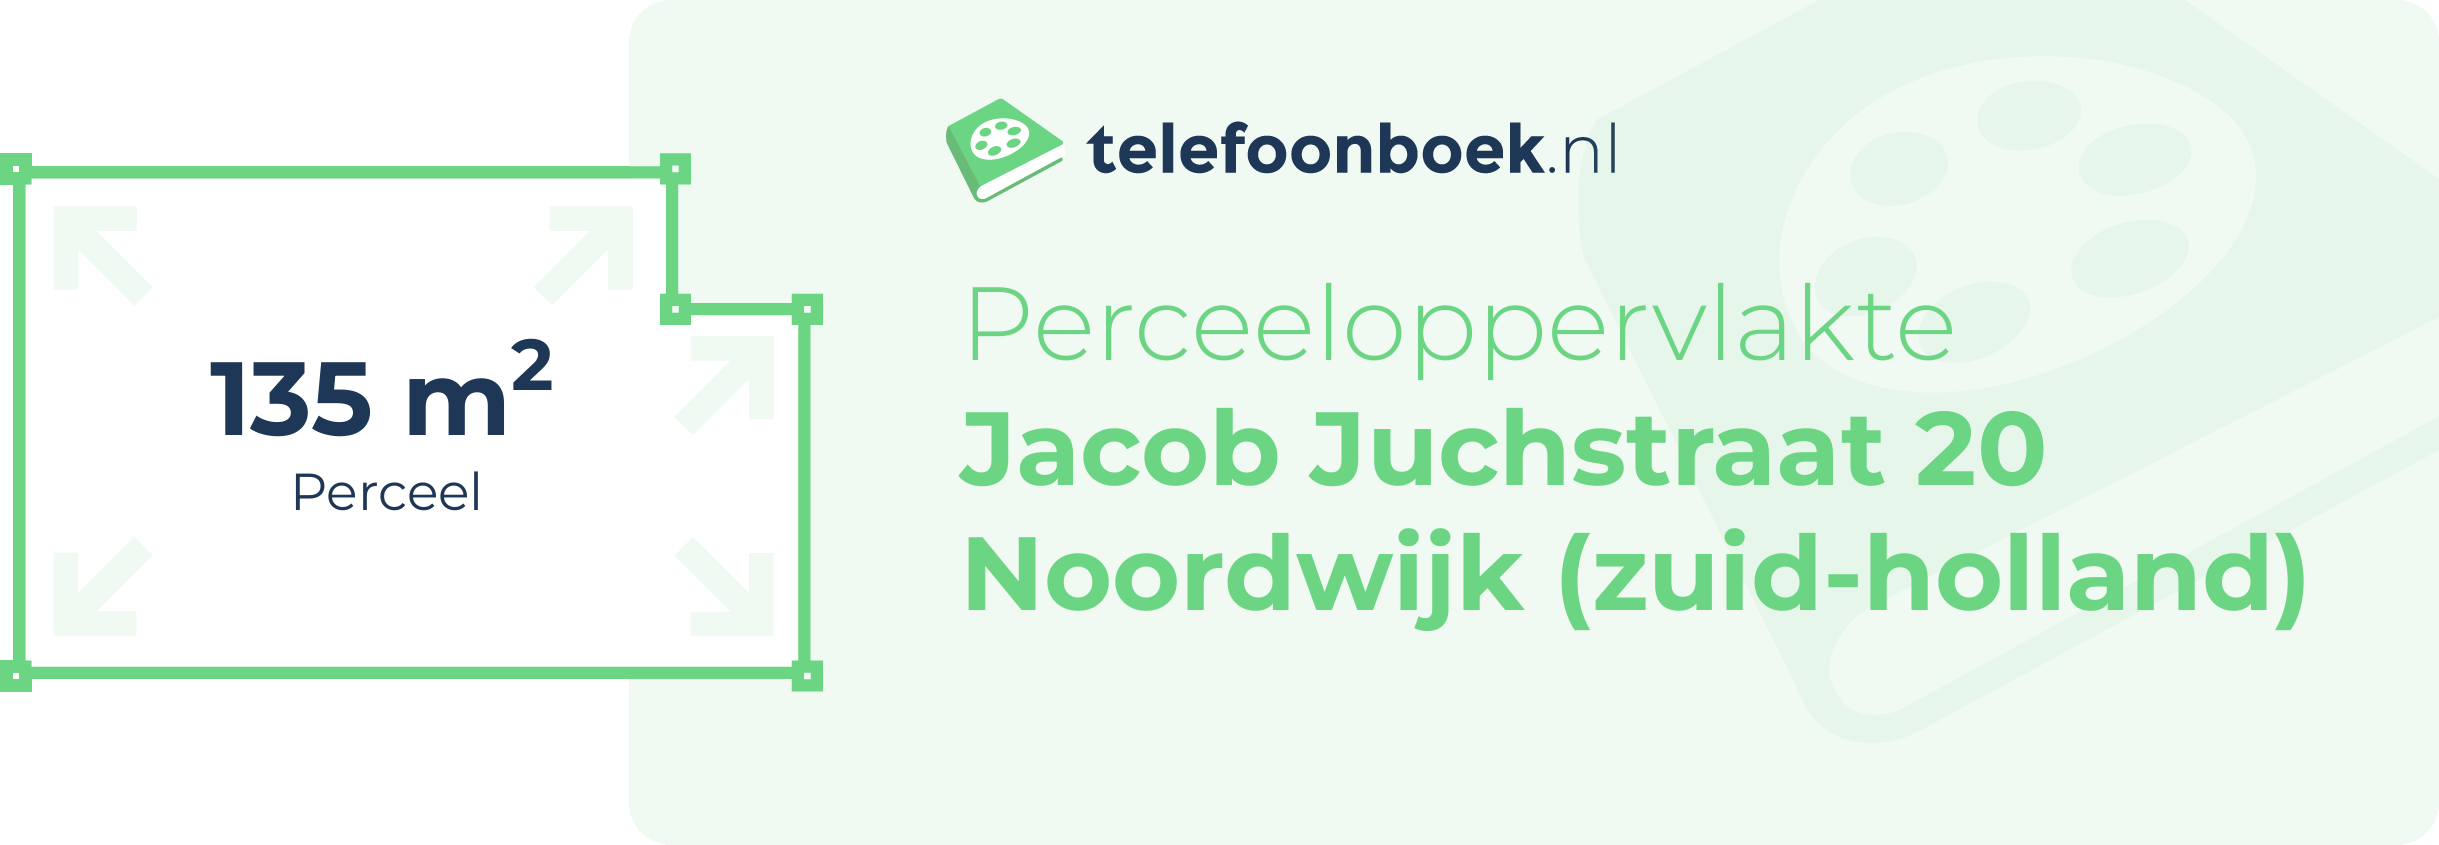 Perceeloppervlakte Jacob Juchstraat 20 Noordwijk (Zuid-Holland)